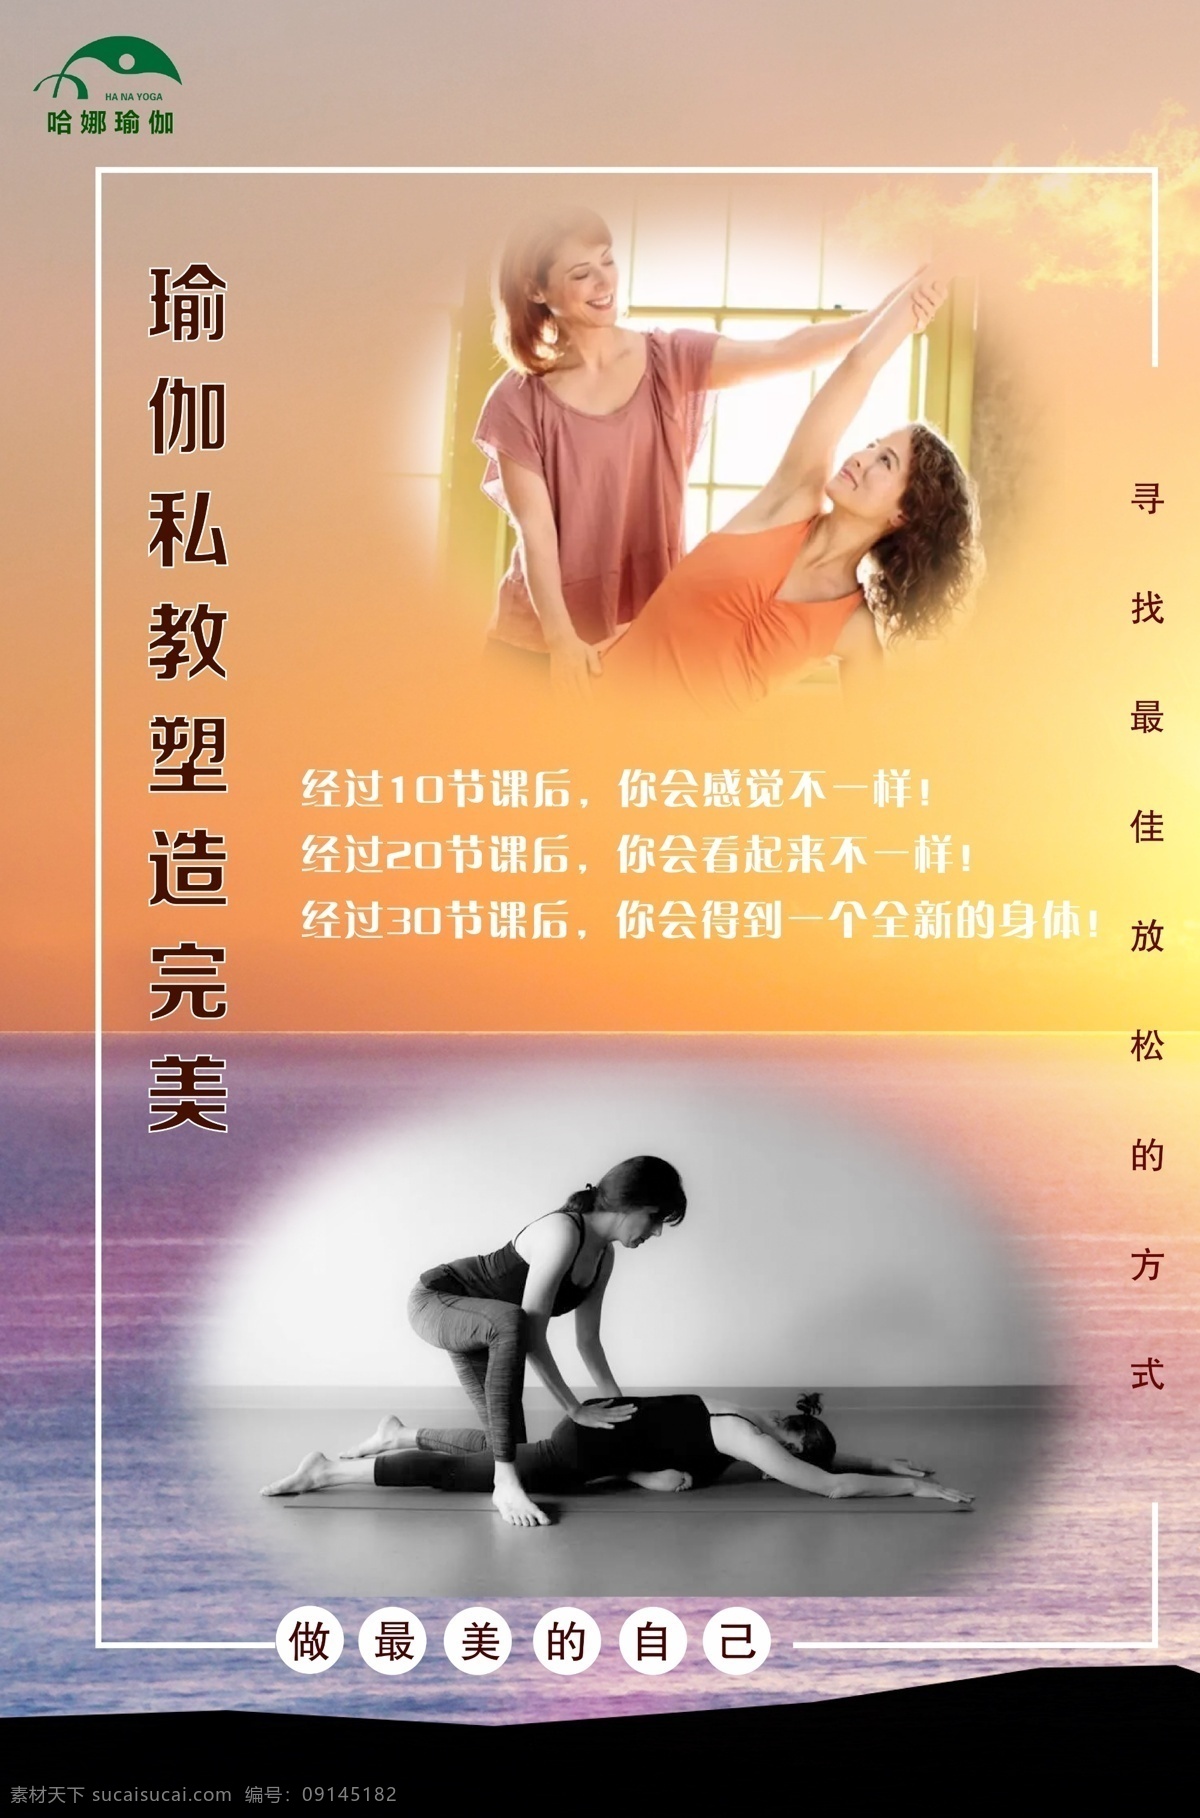 娜 瑜伽 塑形 课 哈娜 私教塑形课 海报 减肥 室内广告设计